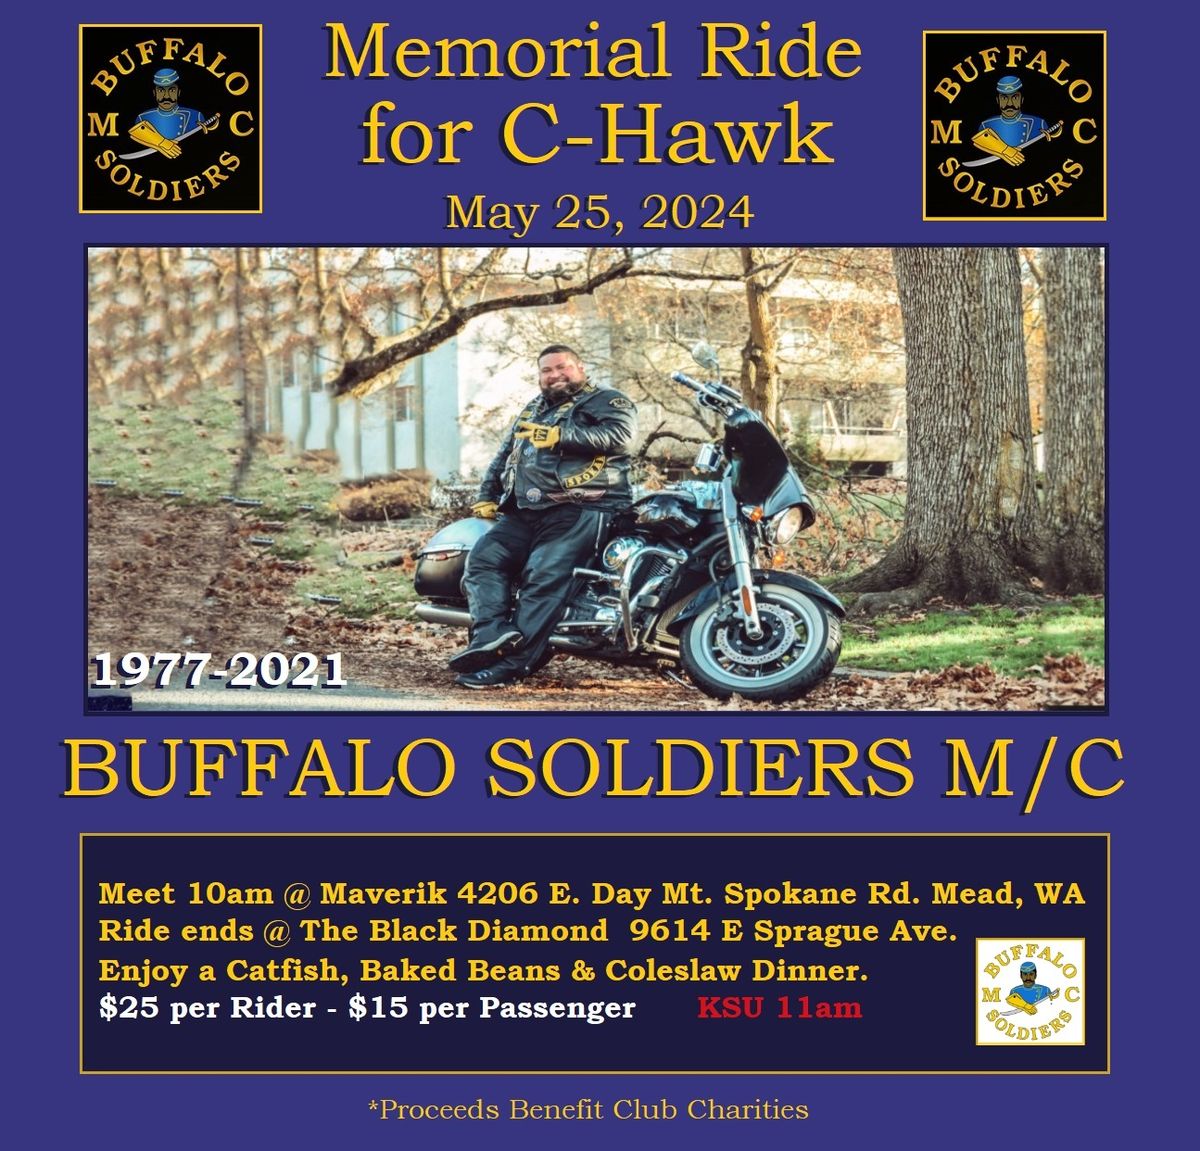 Buffalo Soldiers M\/C Spokane: Memorial Ride for Carlos C-Hawk